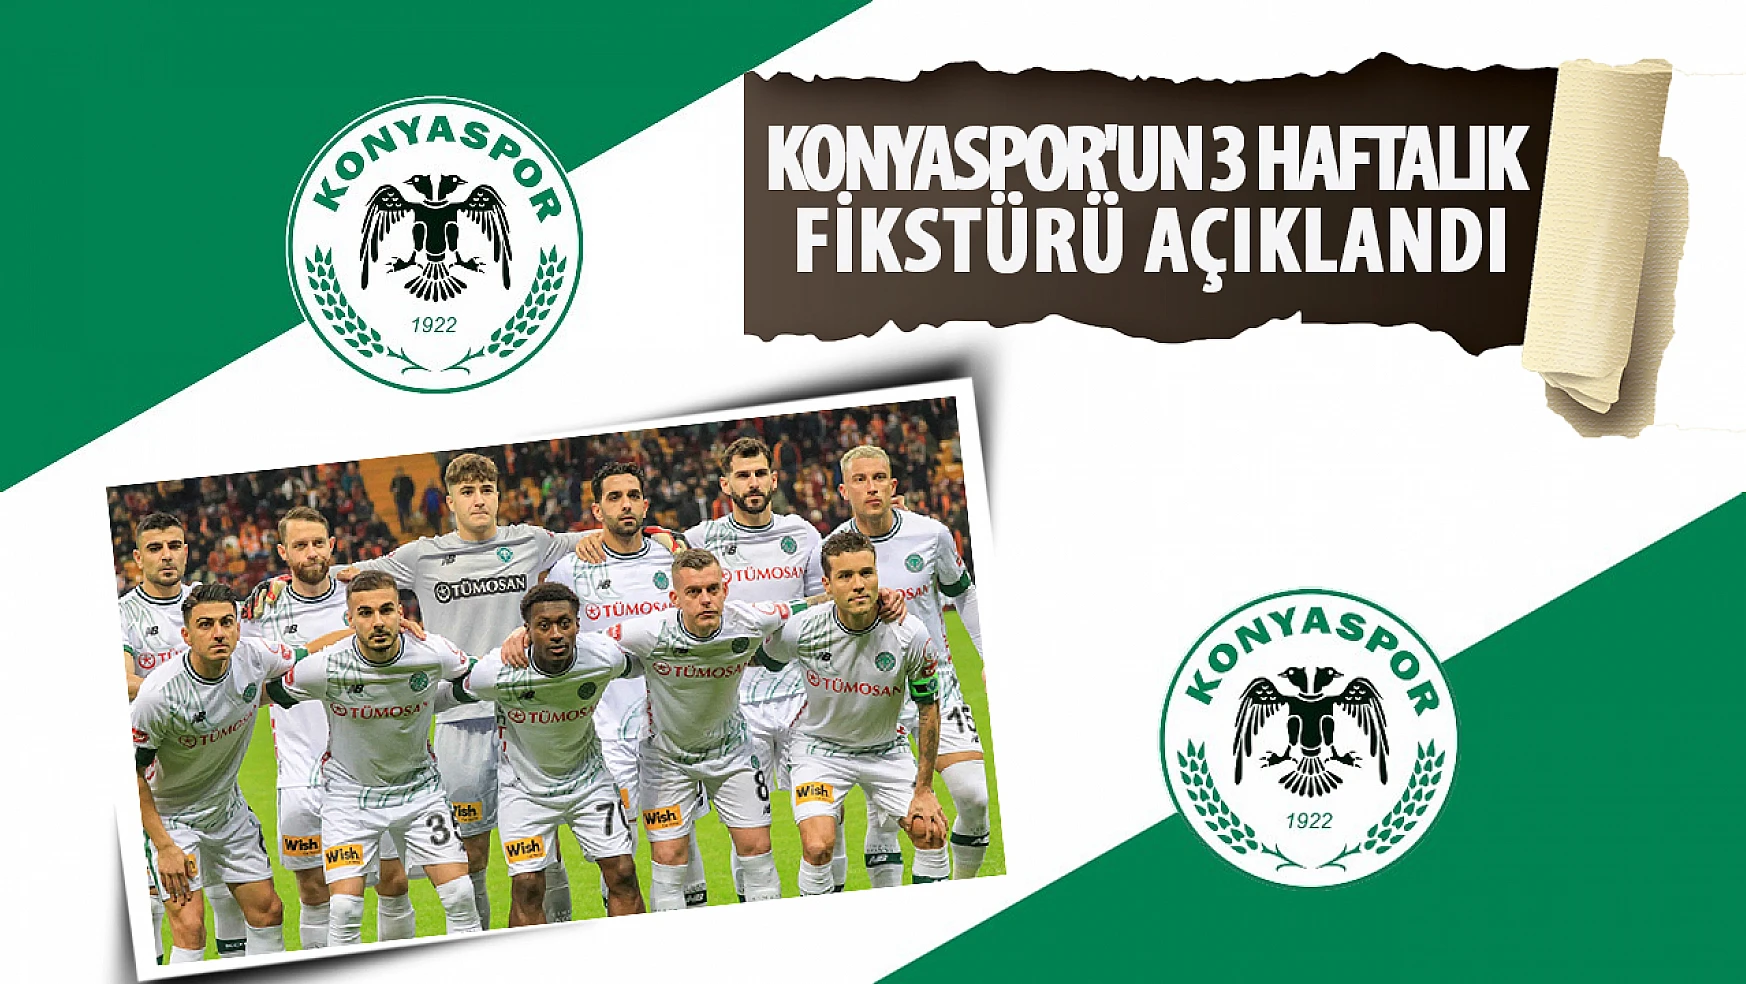 Konyaspor'un 3 haftalık fikstürü açıklandı!